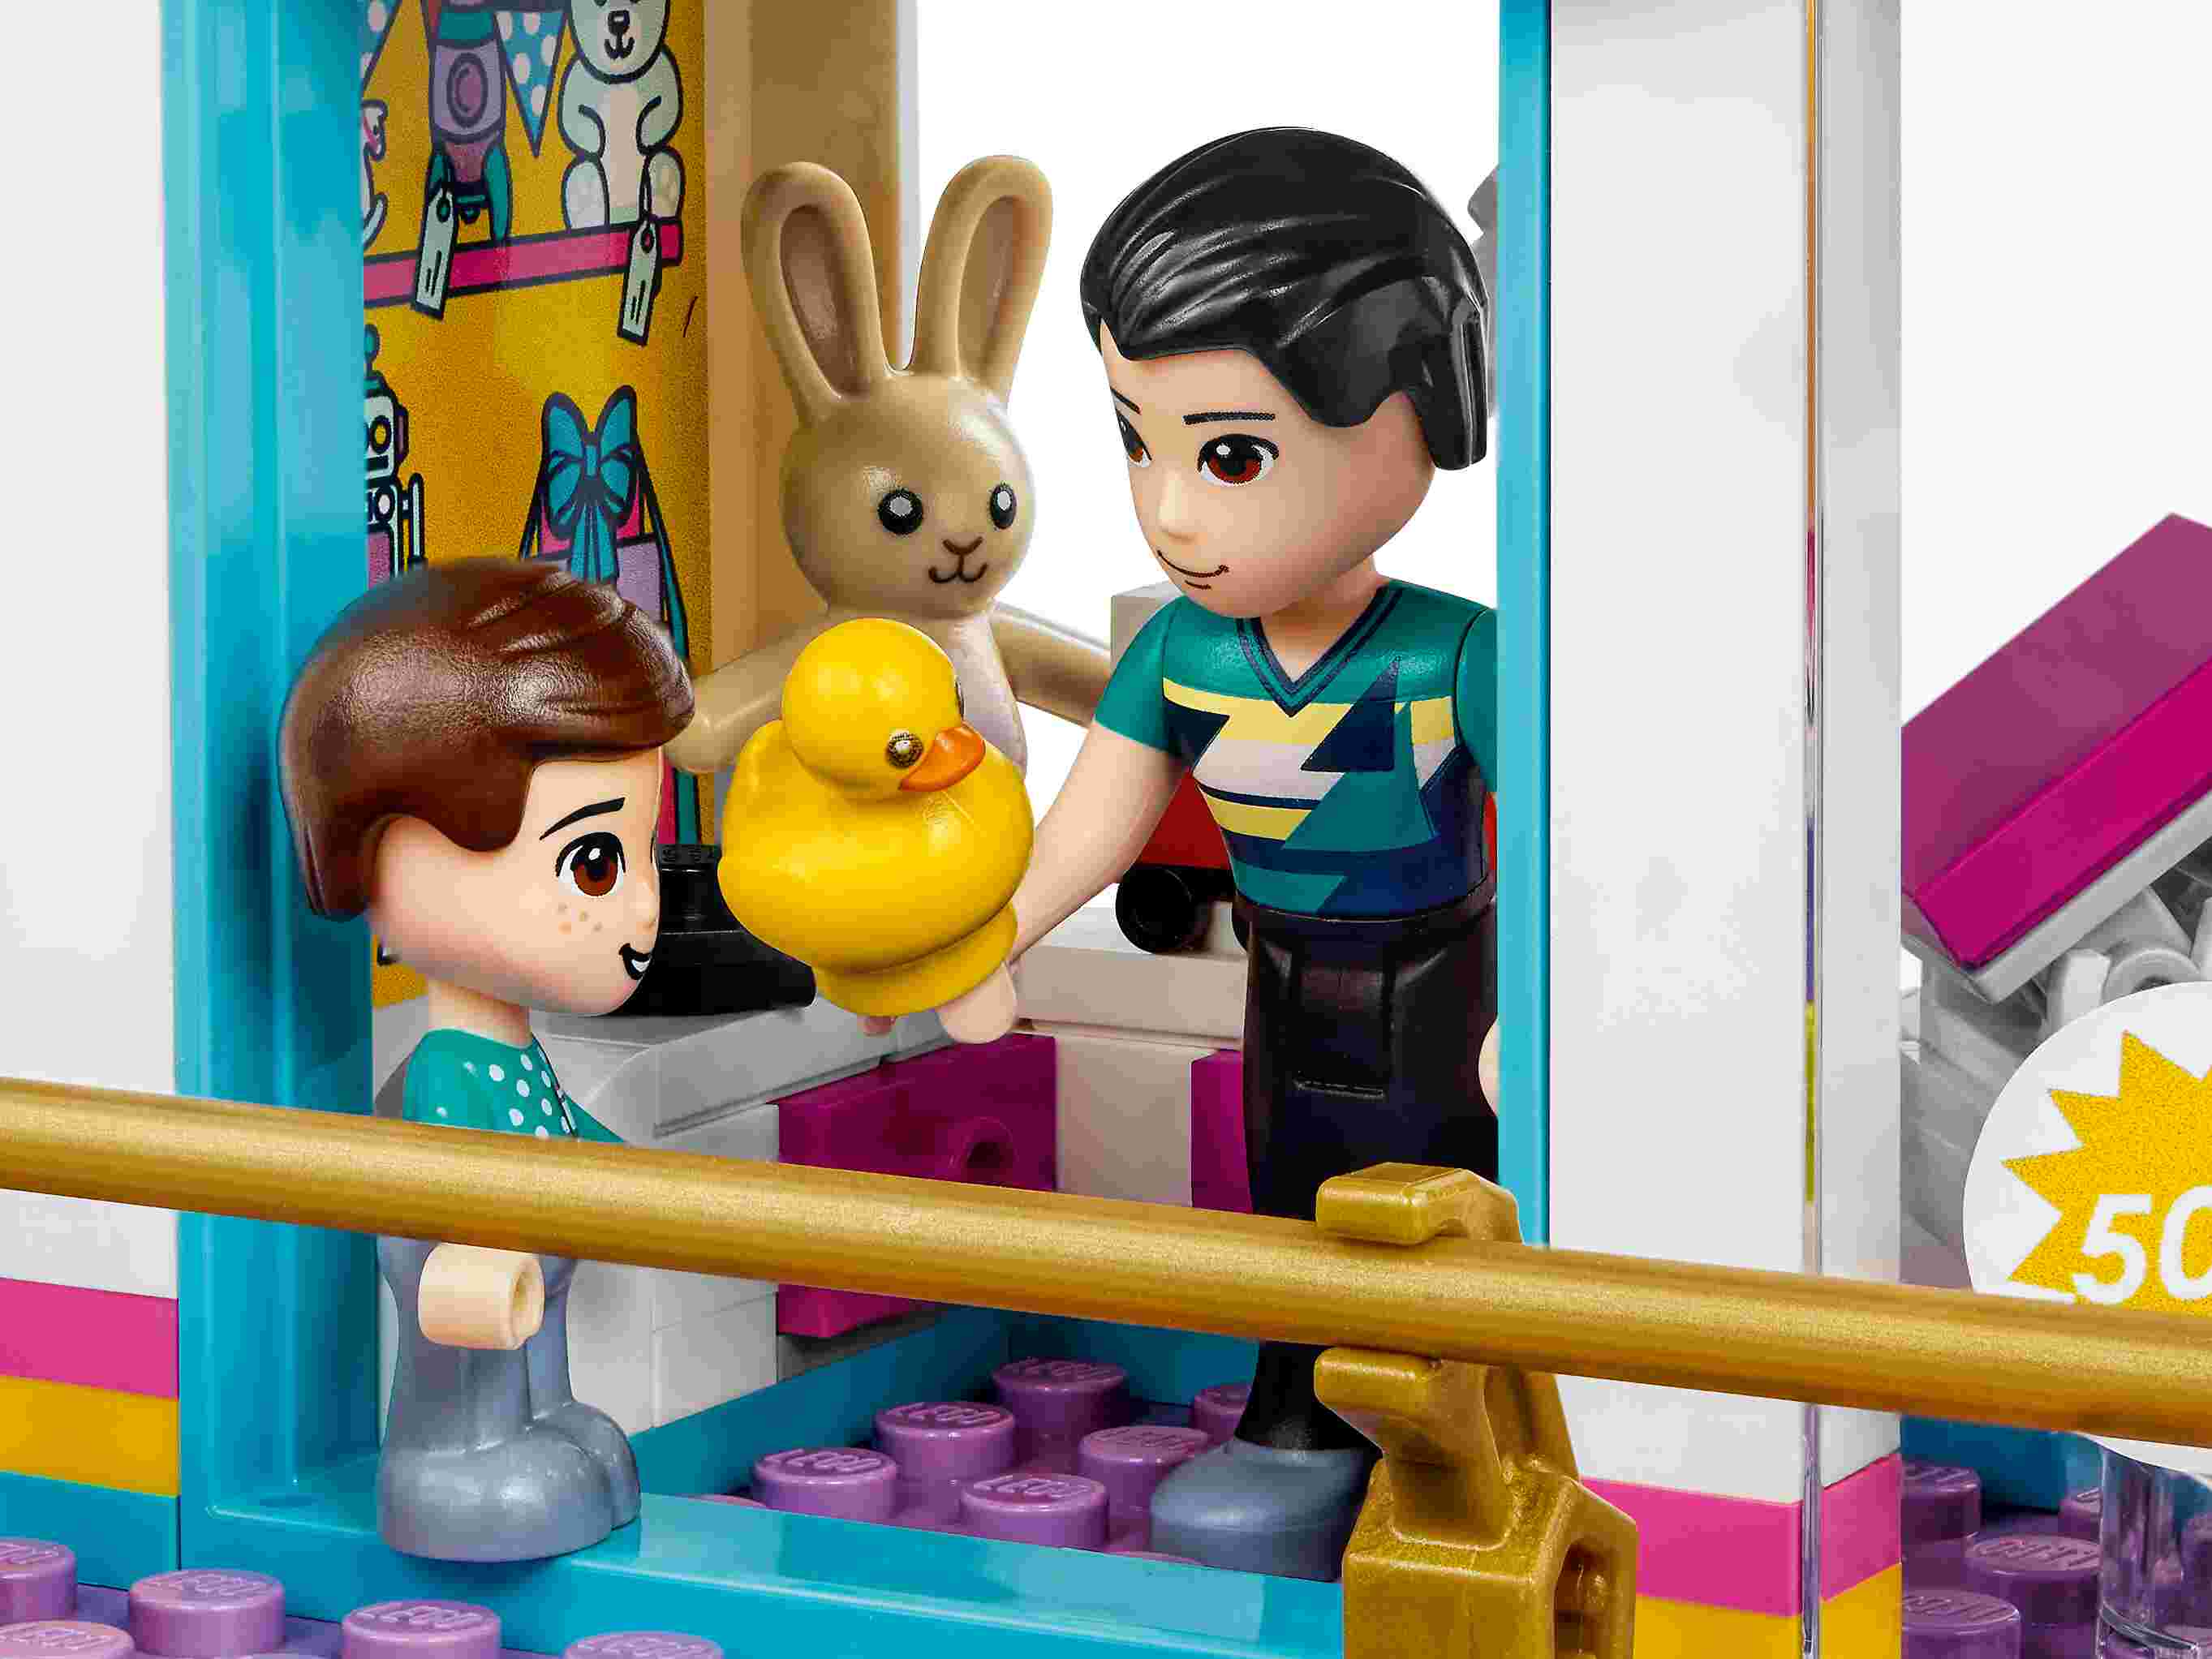 LEGO 41450 Friends Heartlake City Kaufhaus mit 5 Geschäften und 6 Figuren